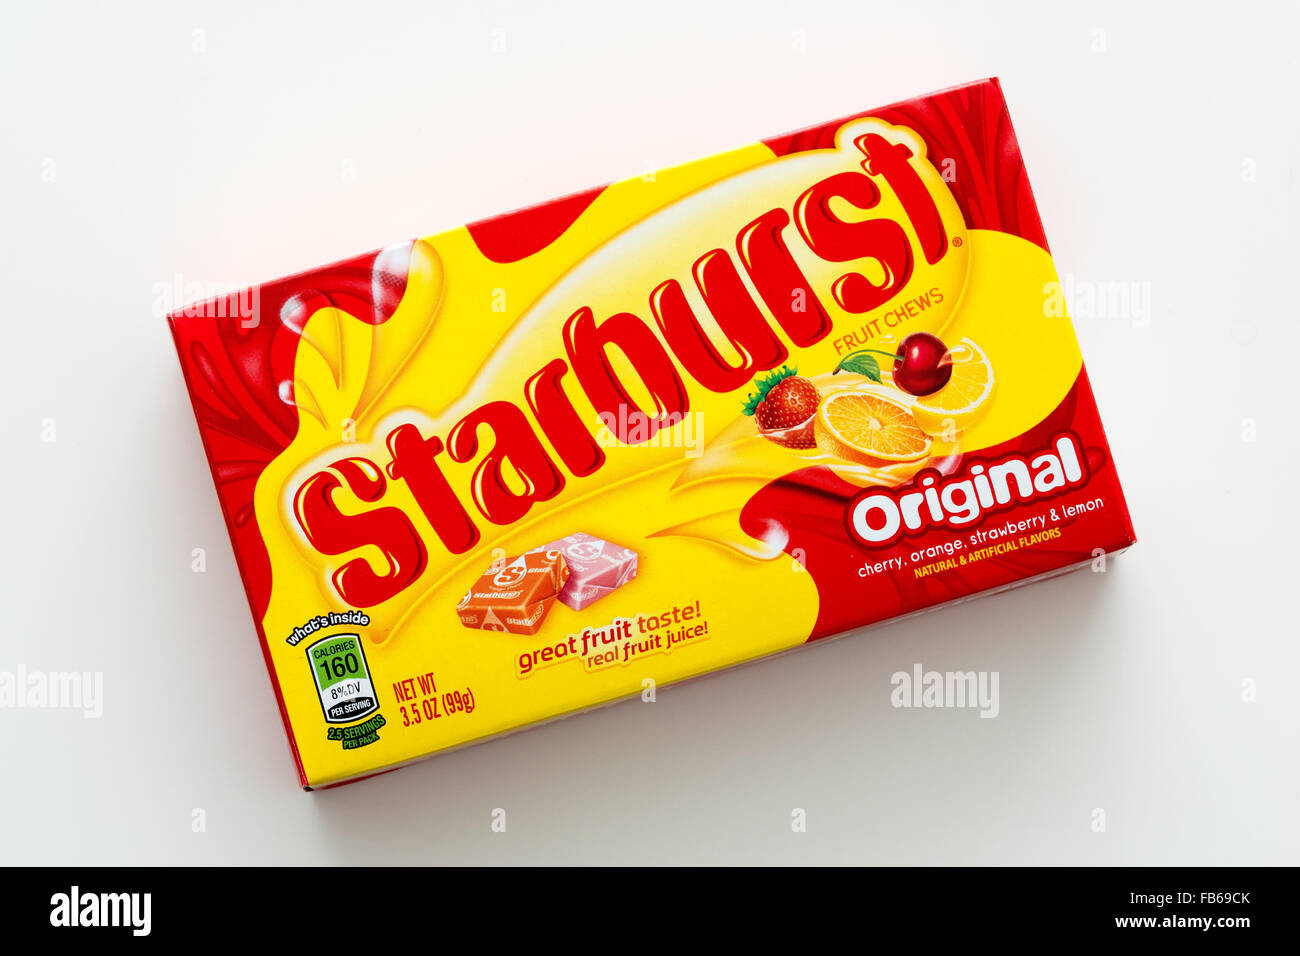 Une boîte de bonbons Starburst, un bonbon à saveur de fruit fabriqué par la société Wrigley. Banque D'Images